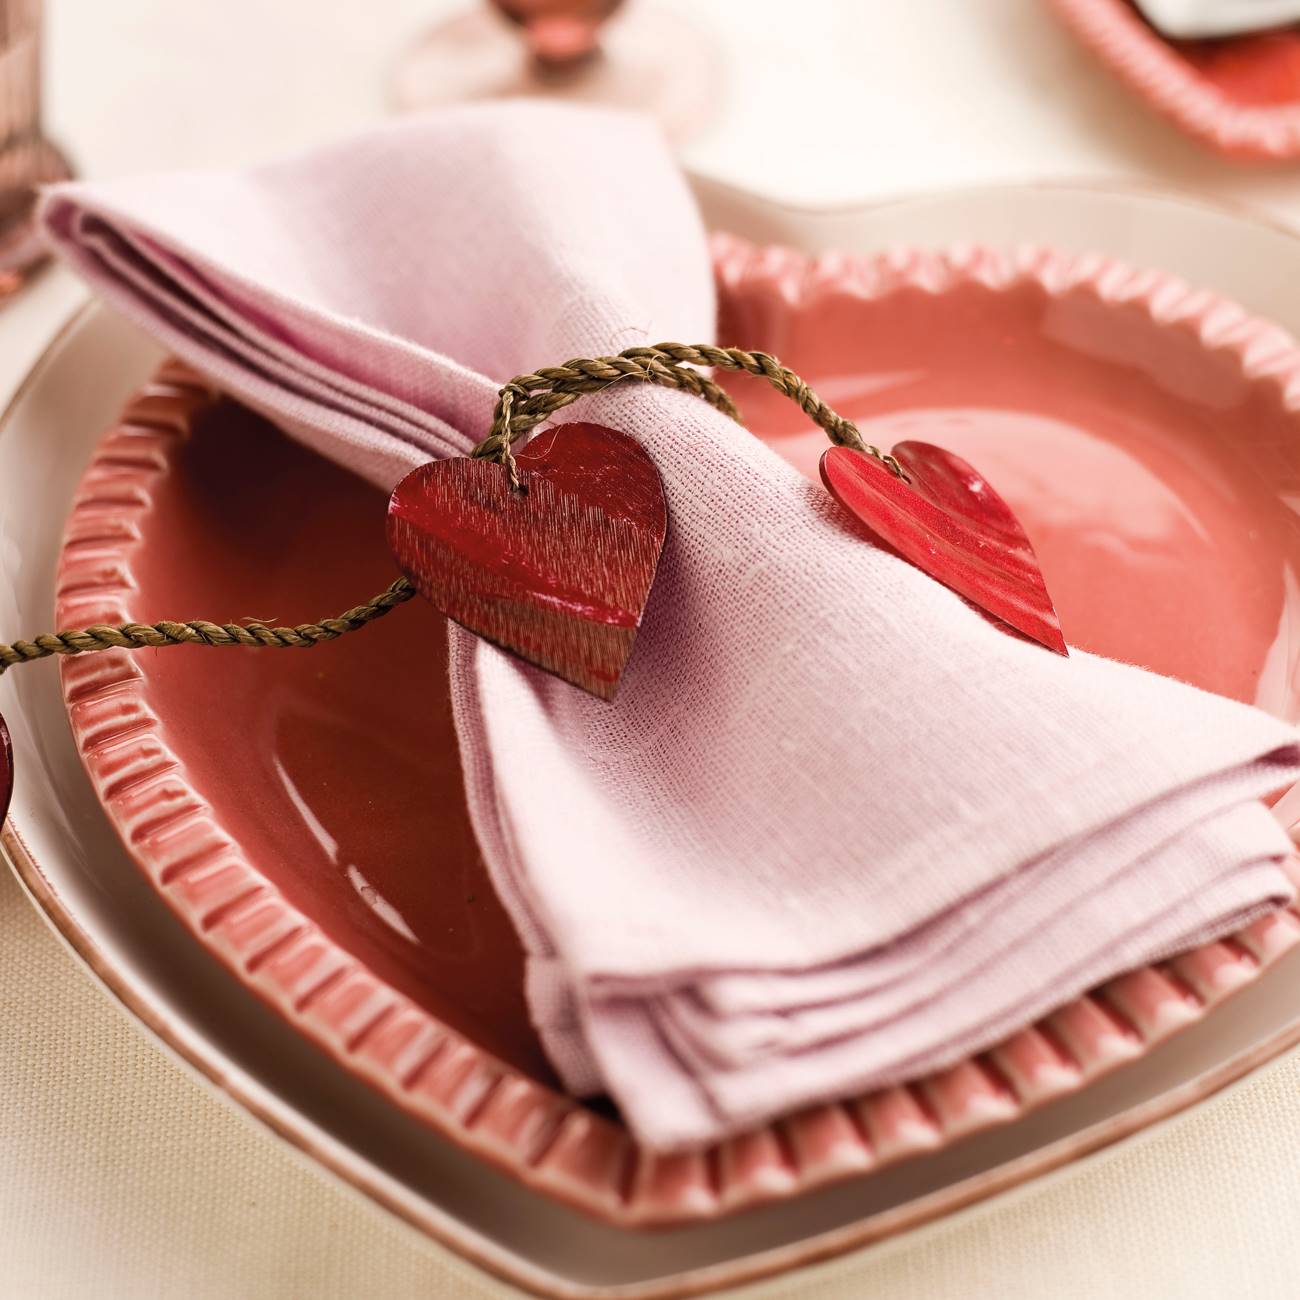 Servilleta rosa con servilletero de corazones y vajilla con forma de corazo´n en rojo y rosa.